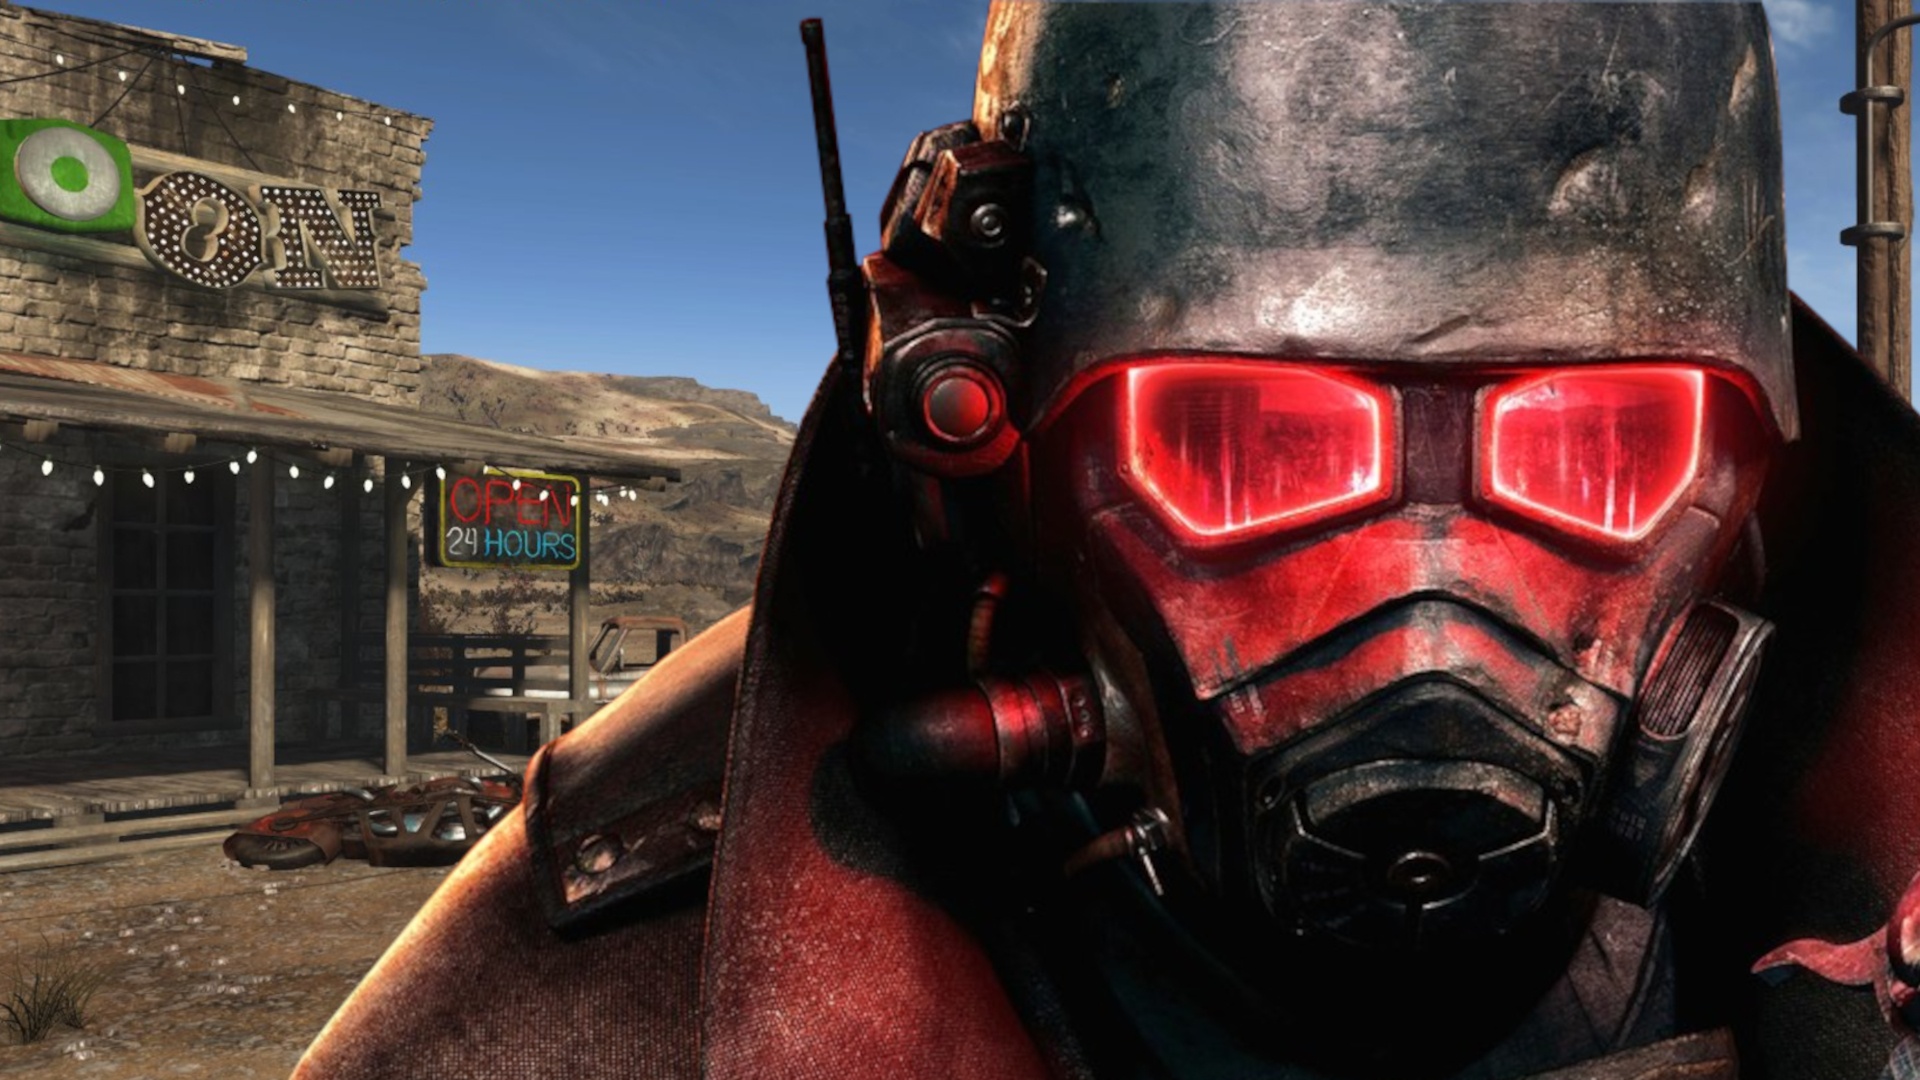 #Fallout: New Vegas bekommt ein Remake von Fans, hier sind die neuesten Bilder